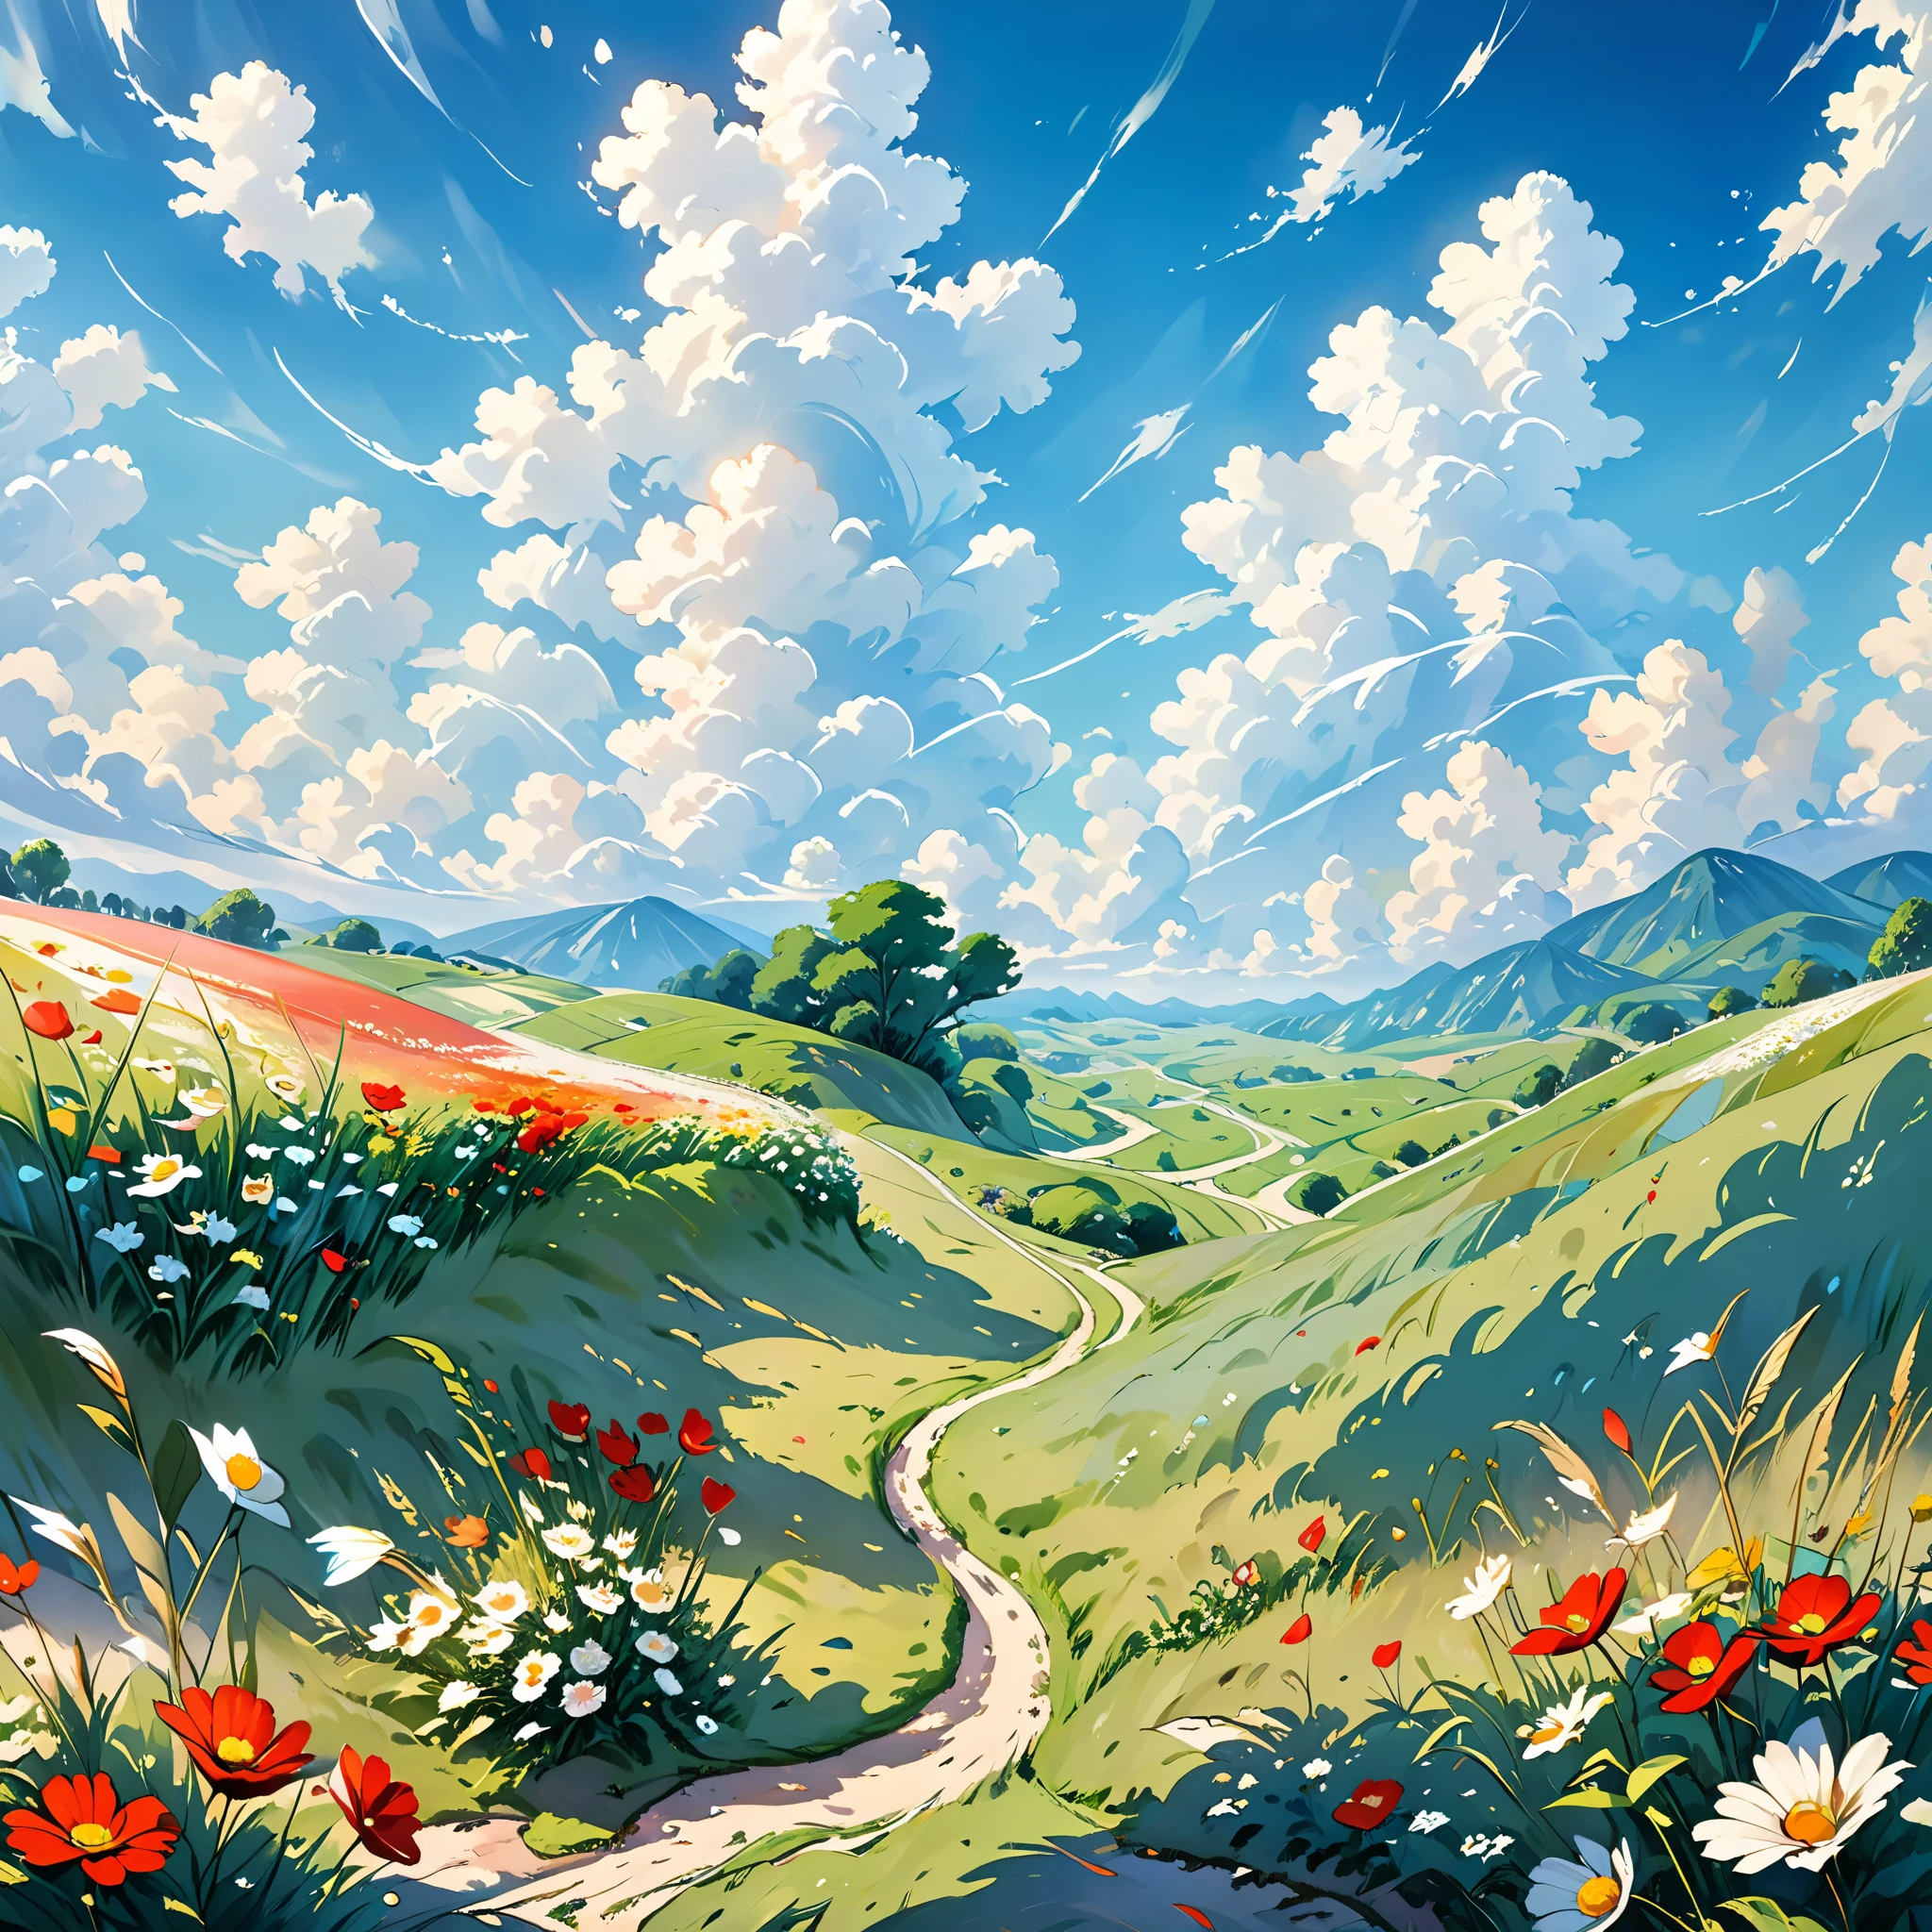 realista, autêntico, bela e incrível paisagem pintura a óleo Studio Ghibli Hayao Miyazaki&#39;pastagem de pétalas com céu azul e nuvens brancas --v6